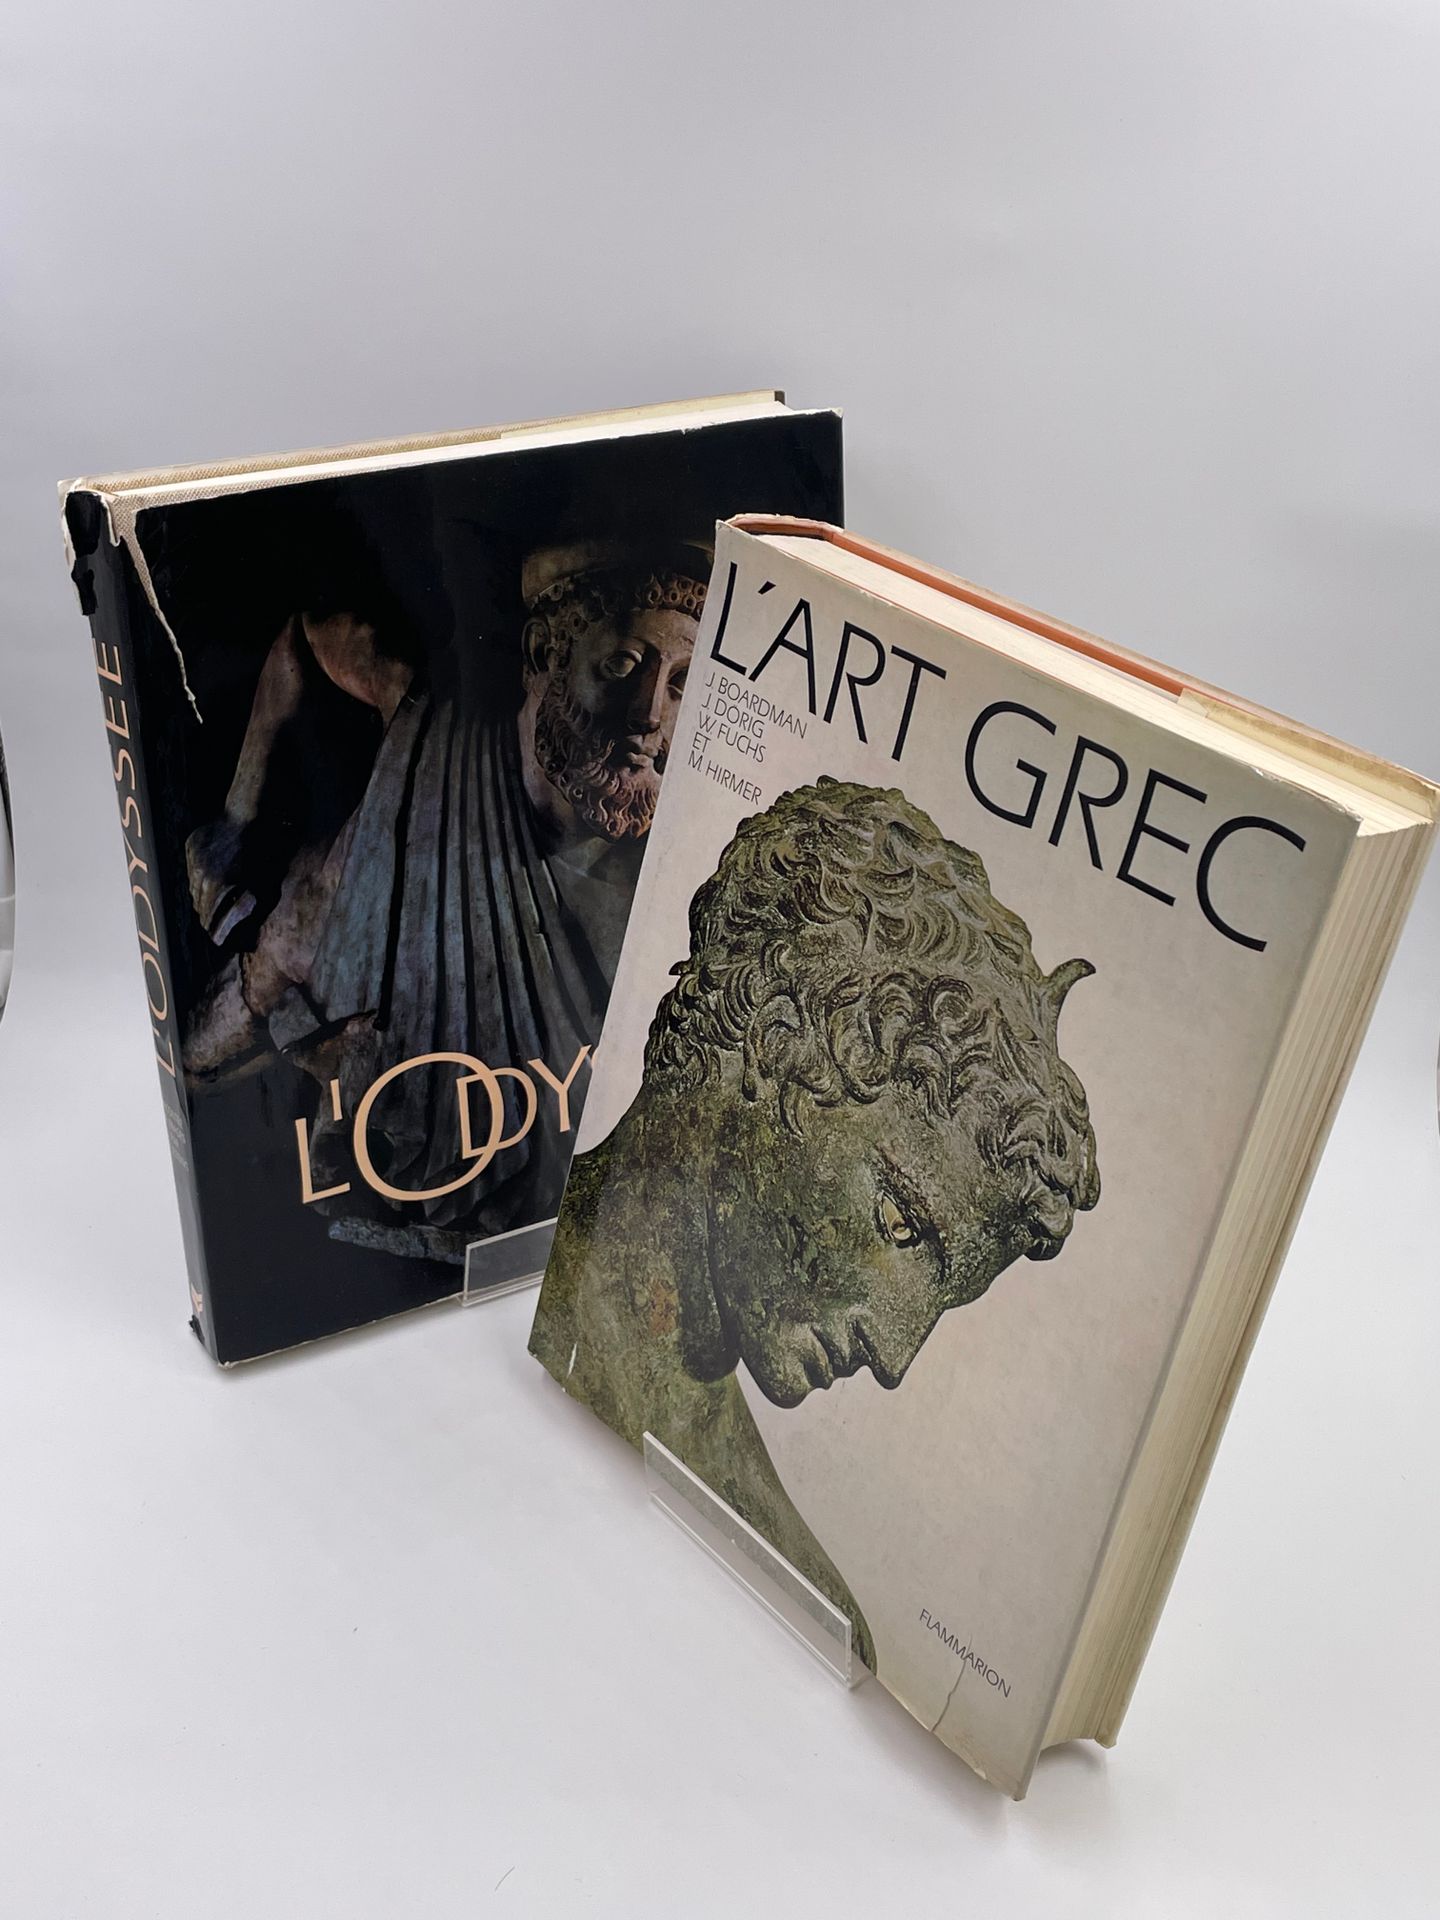 Null 2卷。

- "L'ART GREC" J.Boardman, J.Drig, W Fuchs, M.Hirmer, Edition Flammari&hellip;